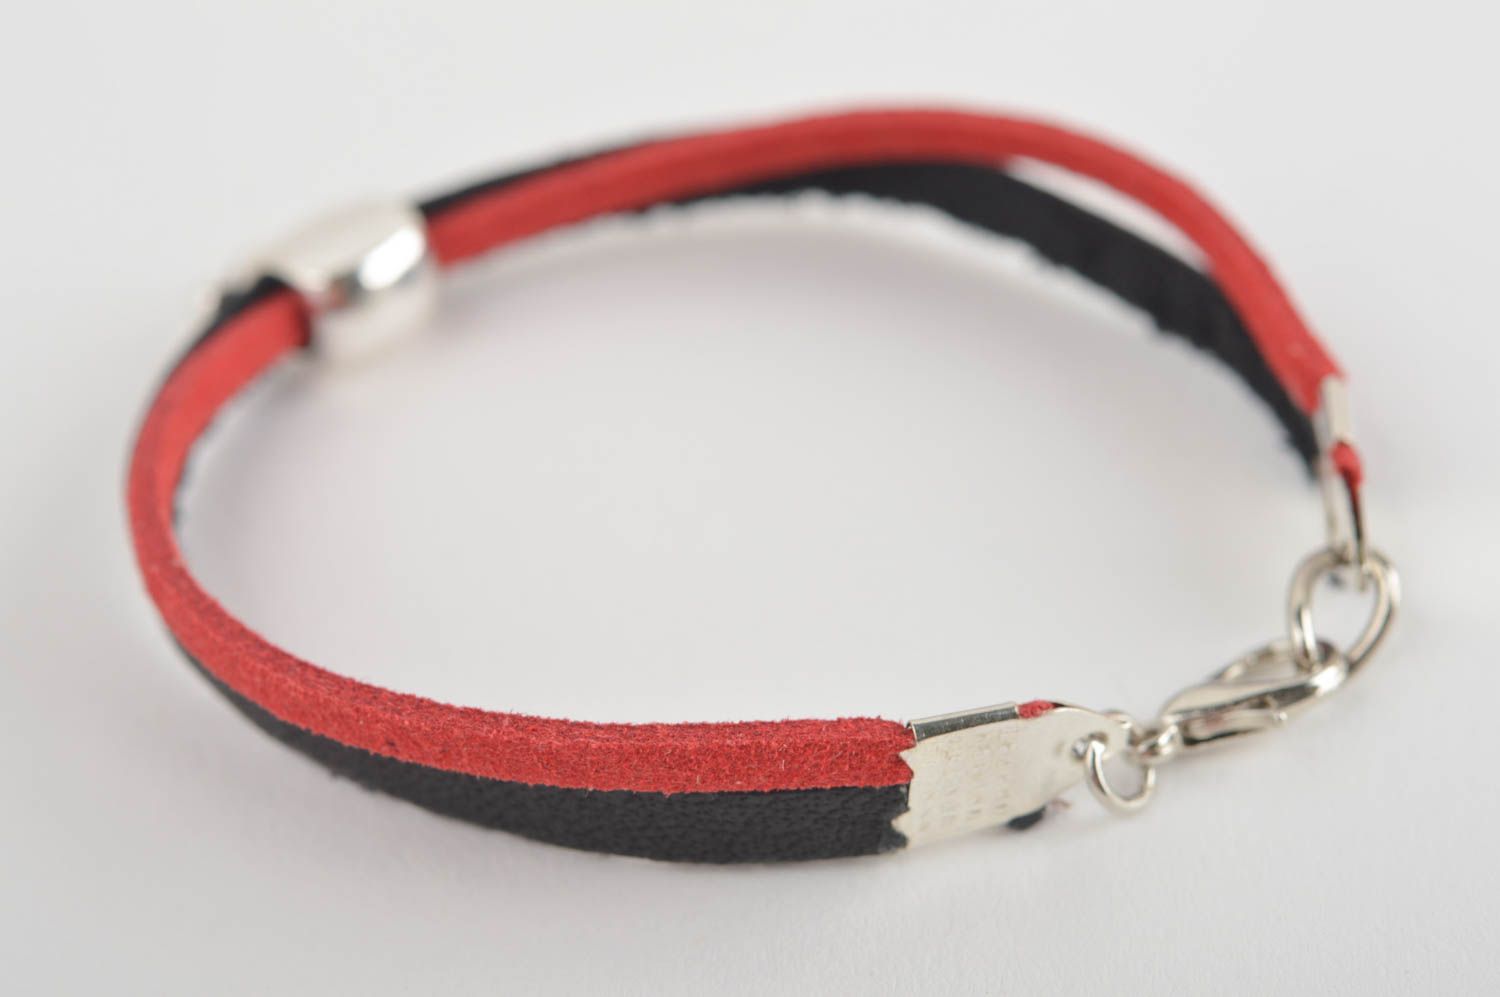 Handmade leather goods designer bracelet thin wrist bracelet gifts for girls photo 5